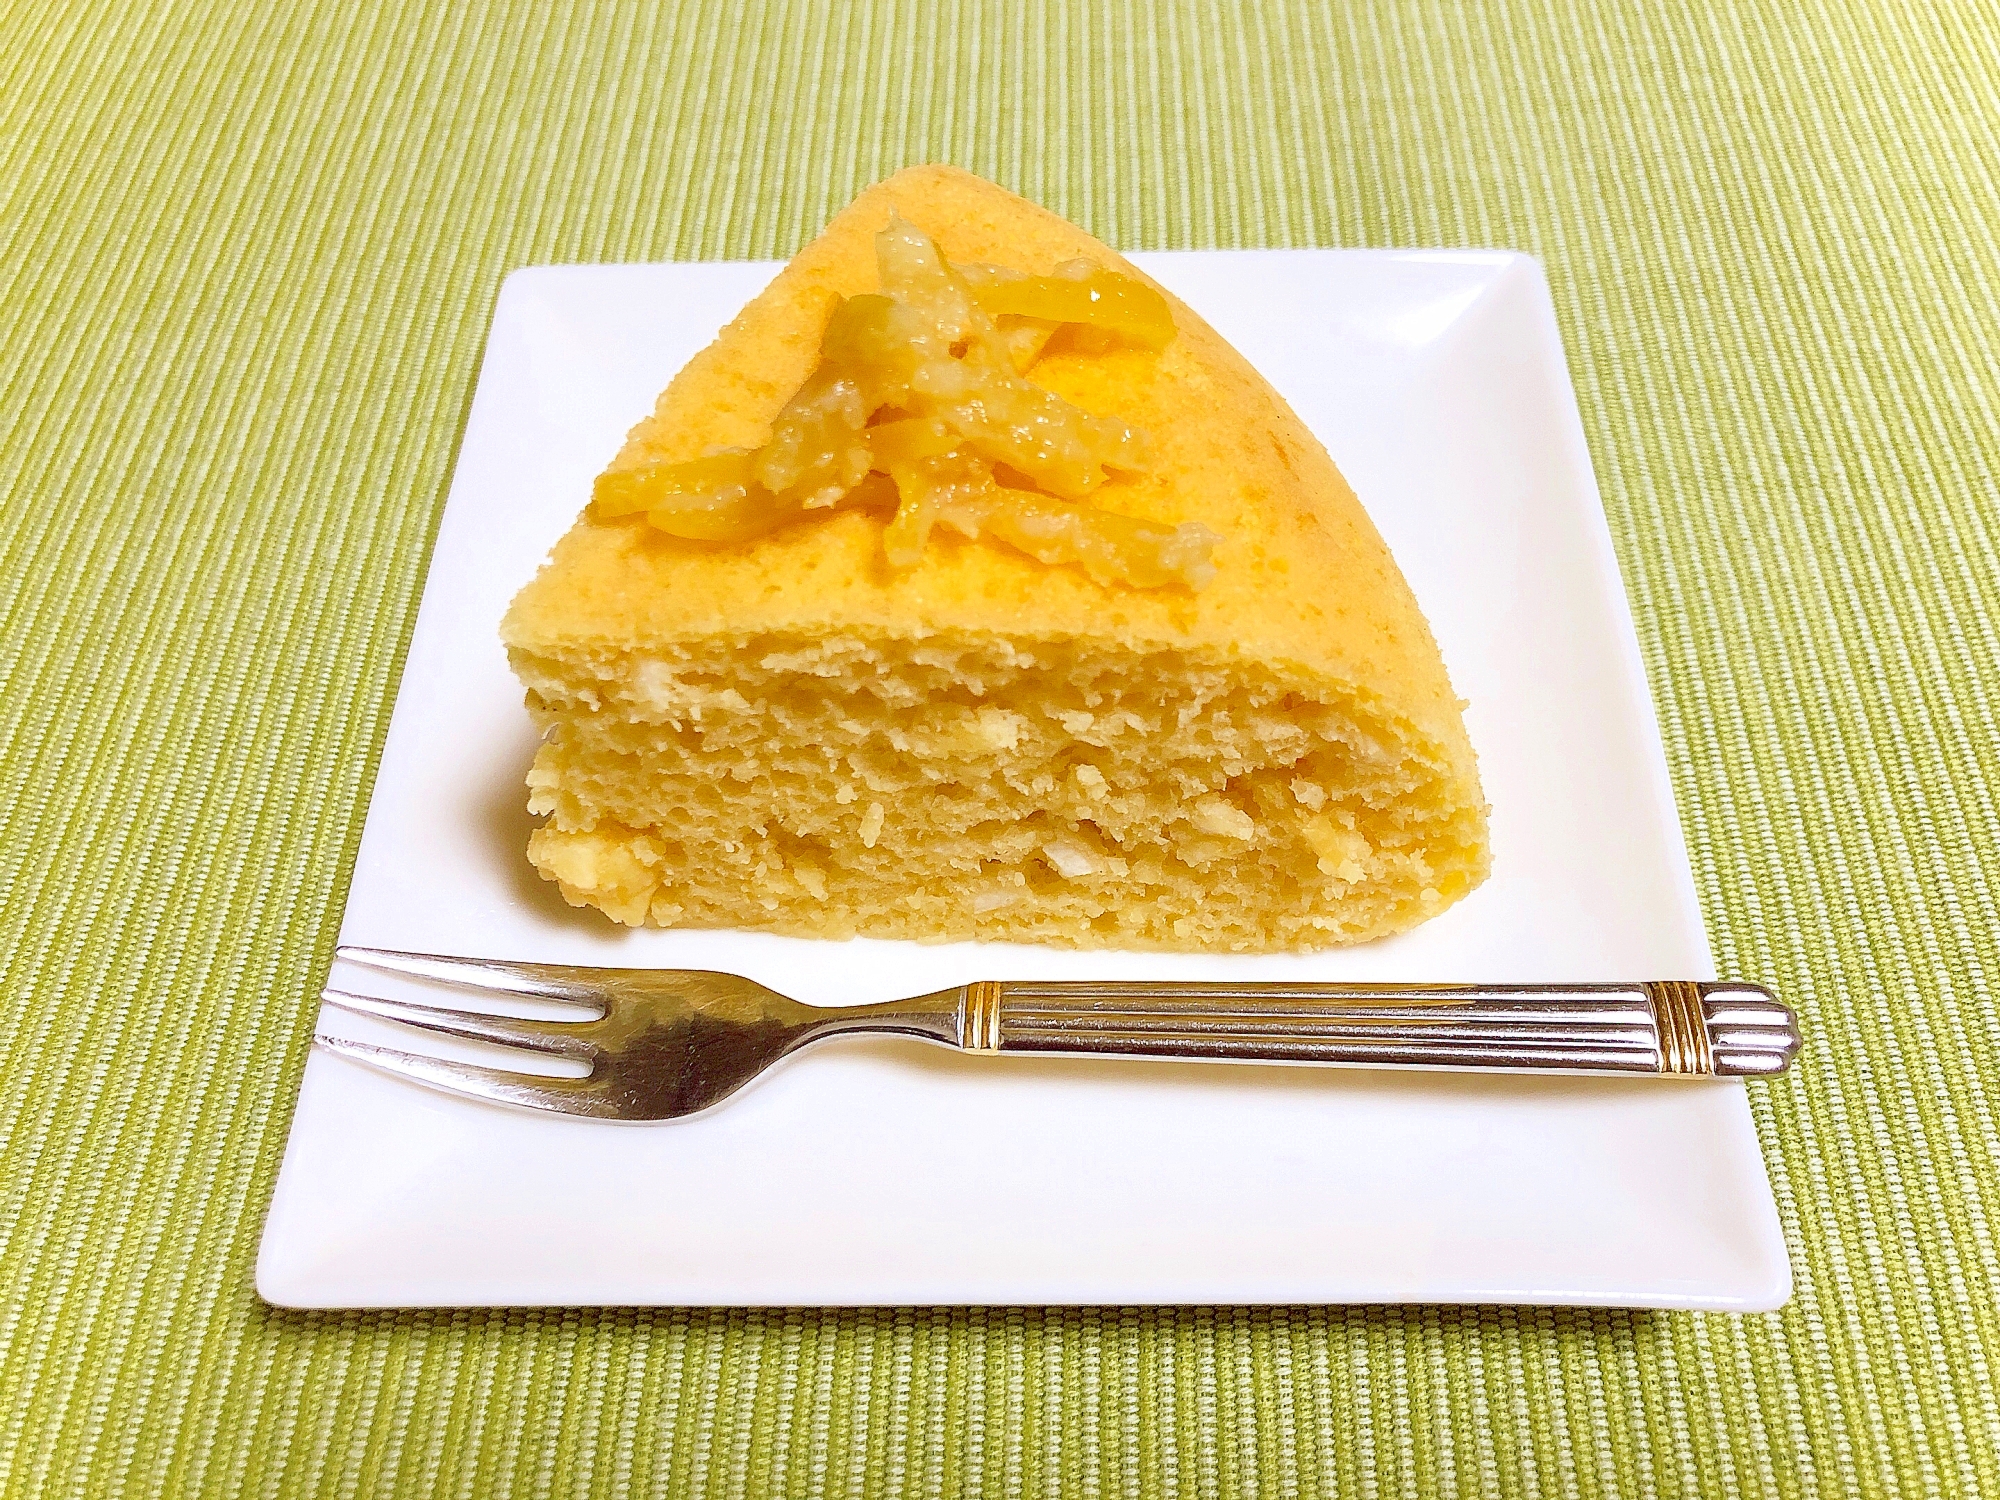 炊飯器で作る♪簡単お菓子☆しっとり柑橘系のケーキ